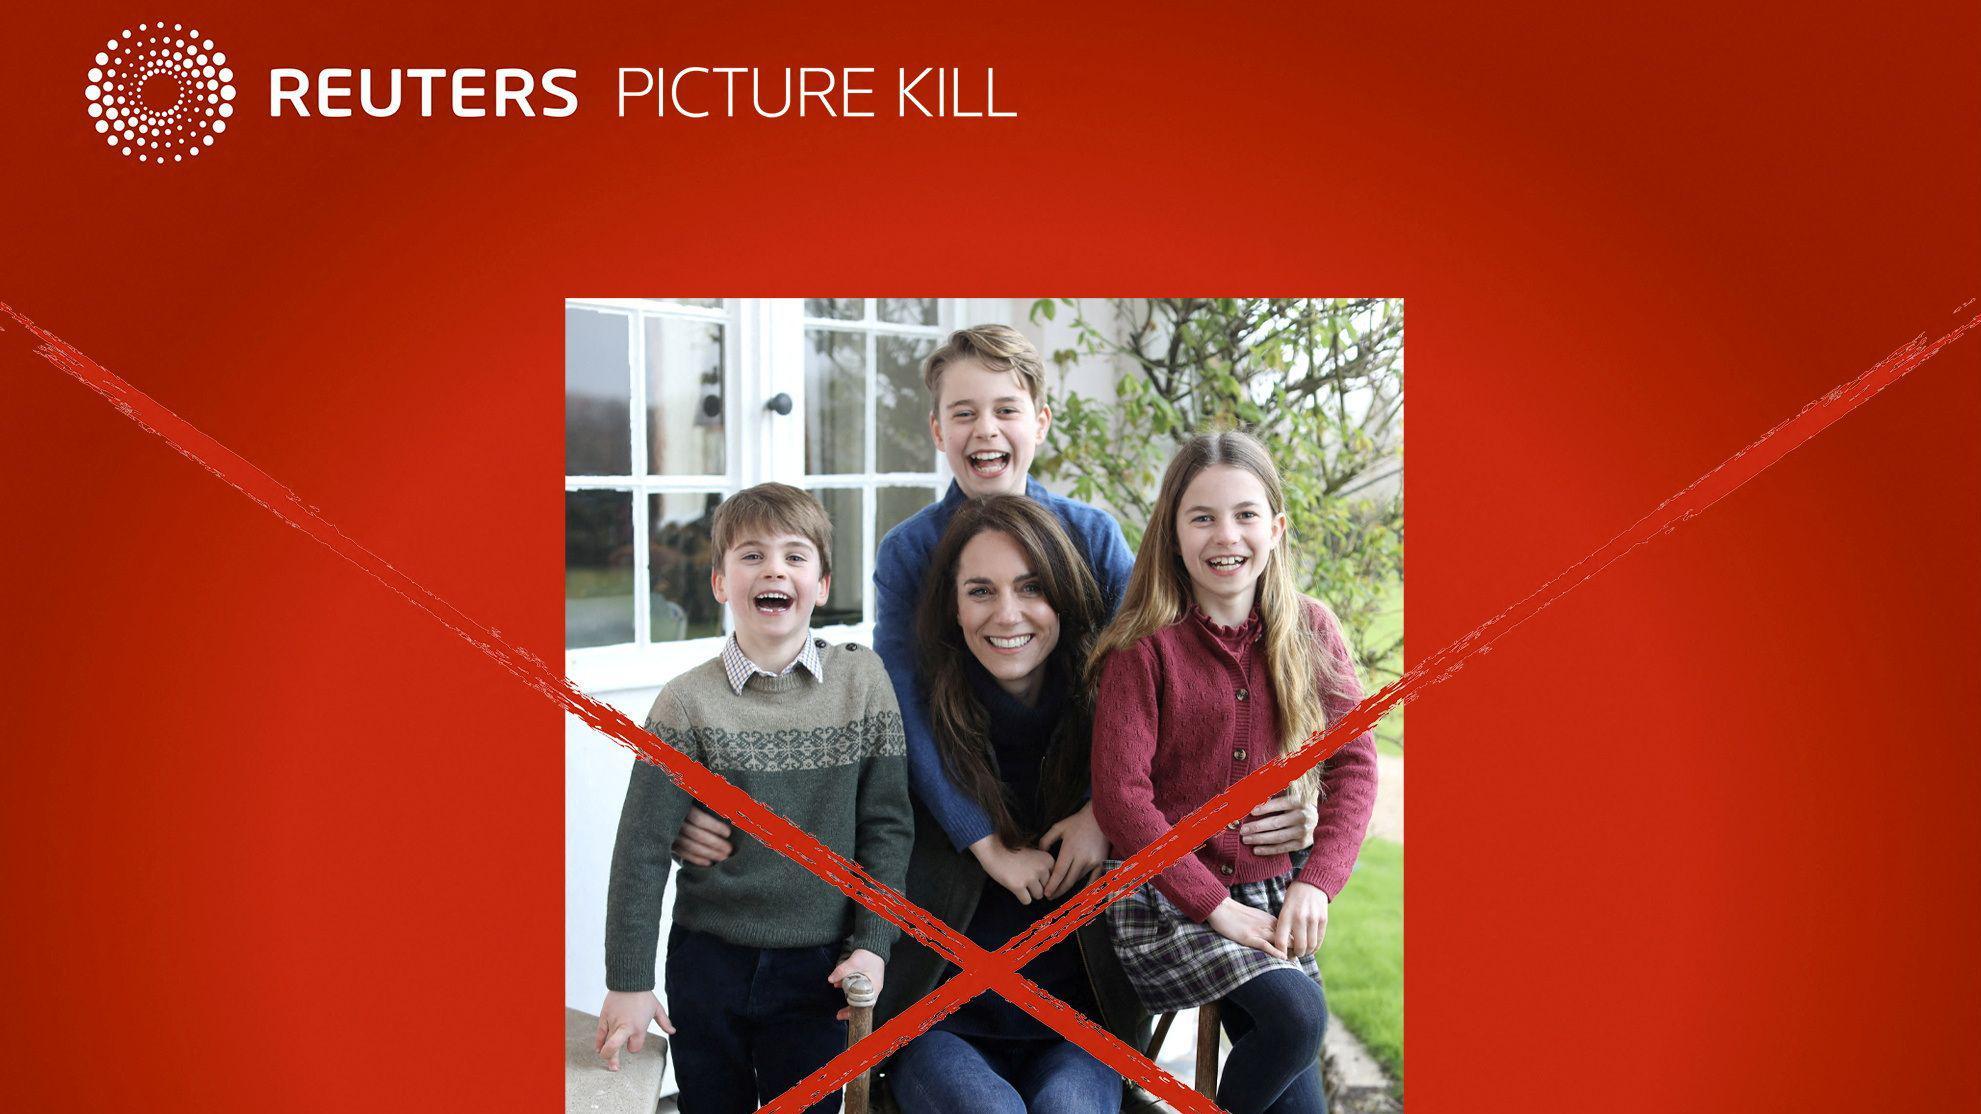 La imagen de la princesa Kate y sus hijos tachada con un mensaje de Reuters que dice: "Por favor, remueva esta imagen de sus sistemas".